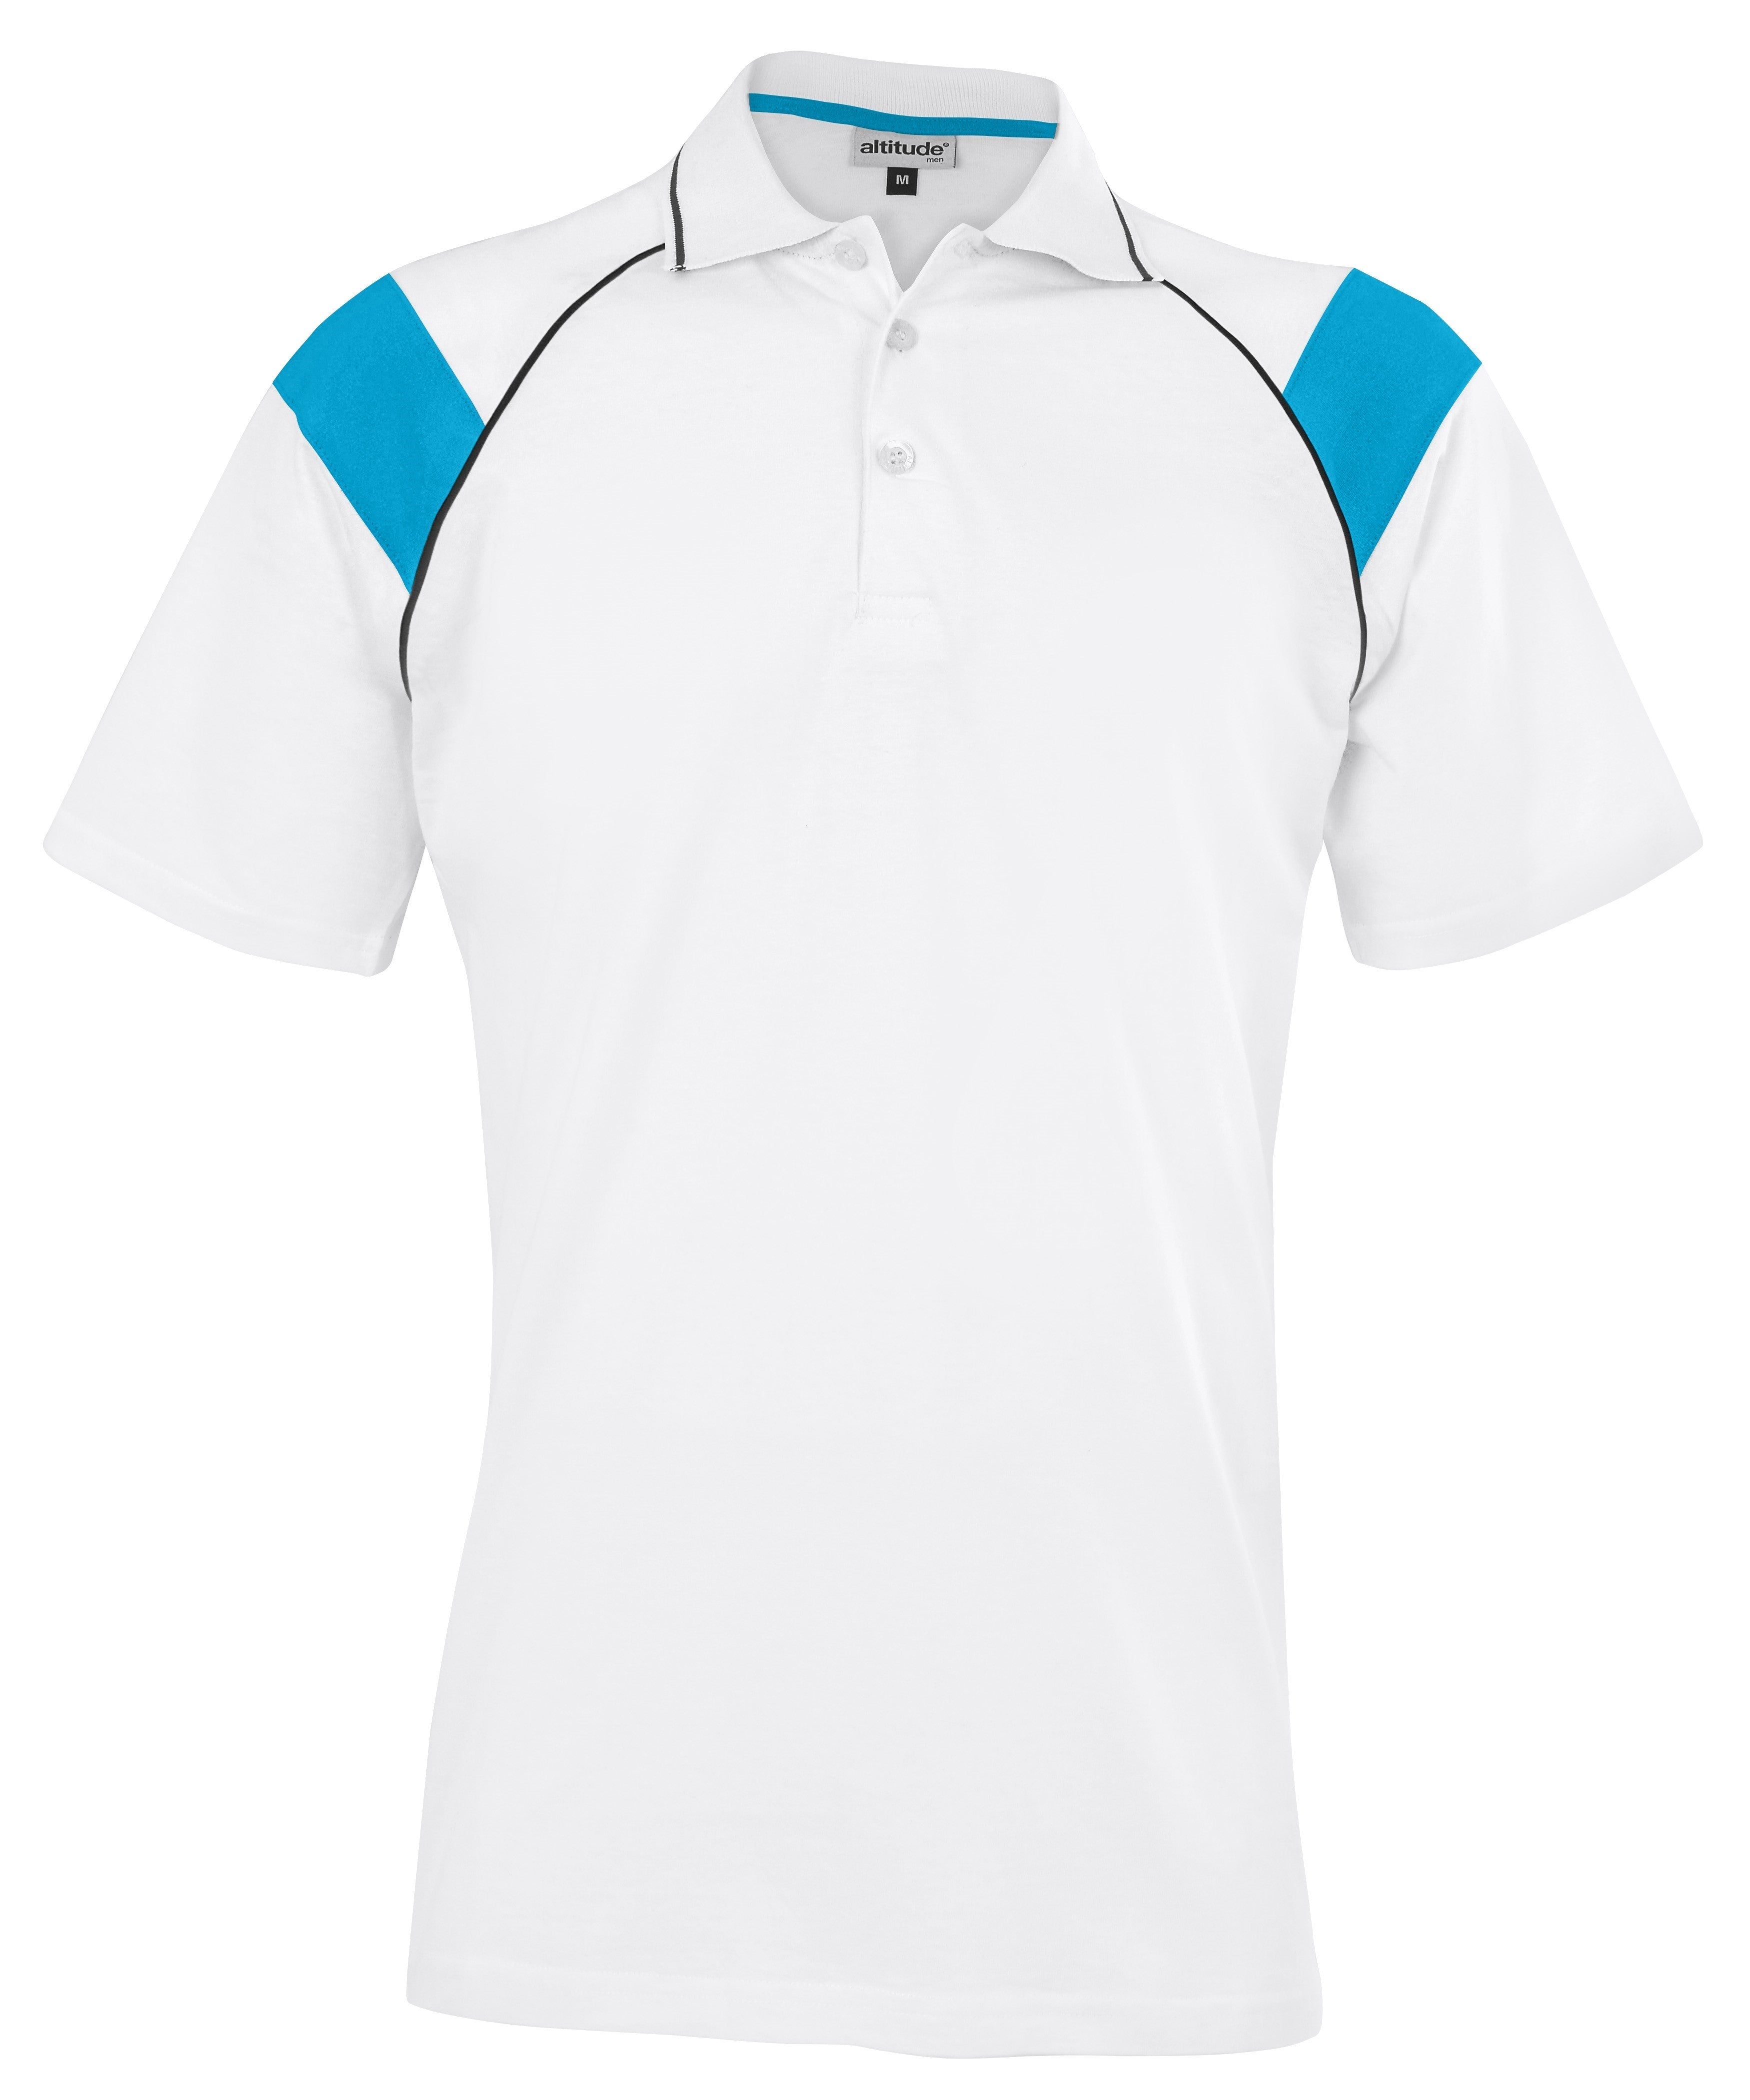 Mens Score Golf Shirt - White Light Blue Only-2XL-Cyan-CY